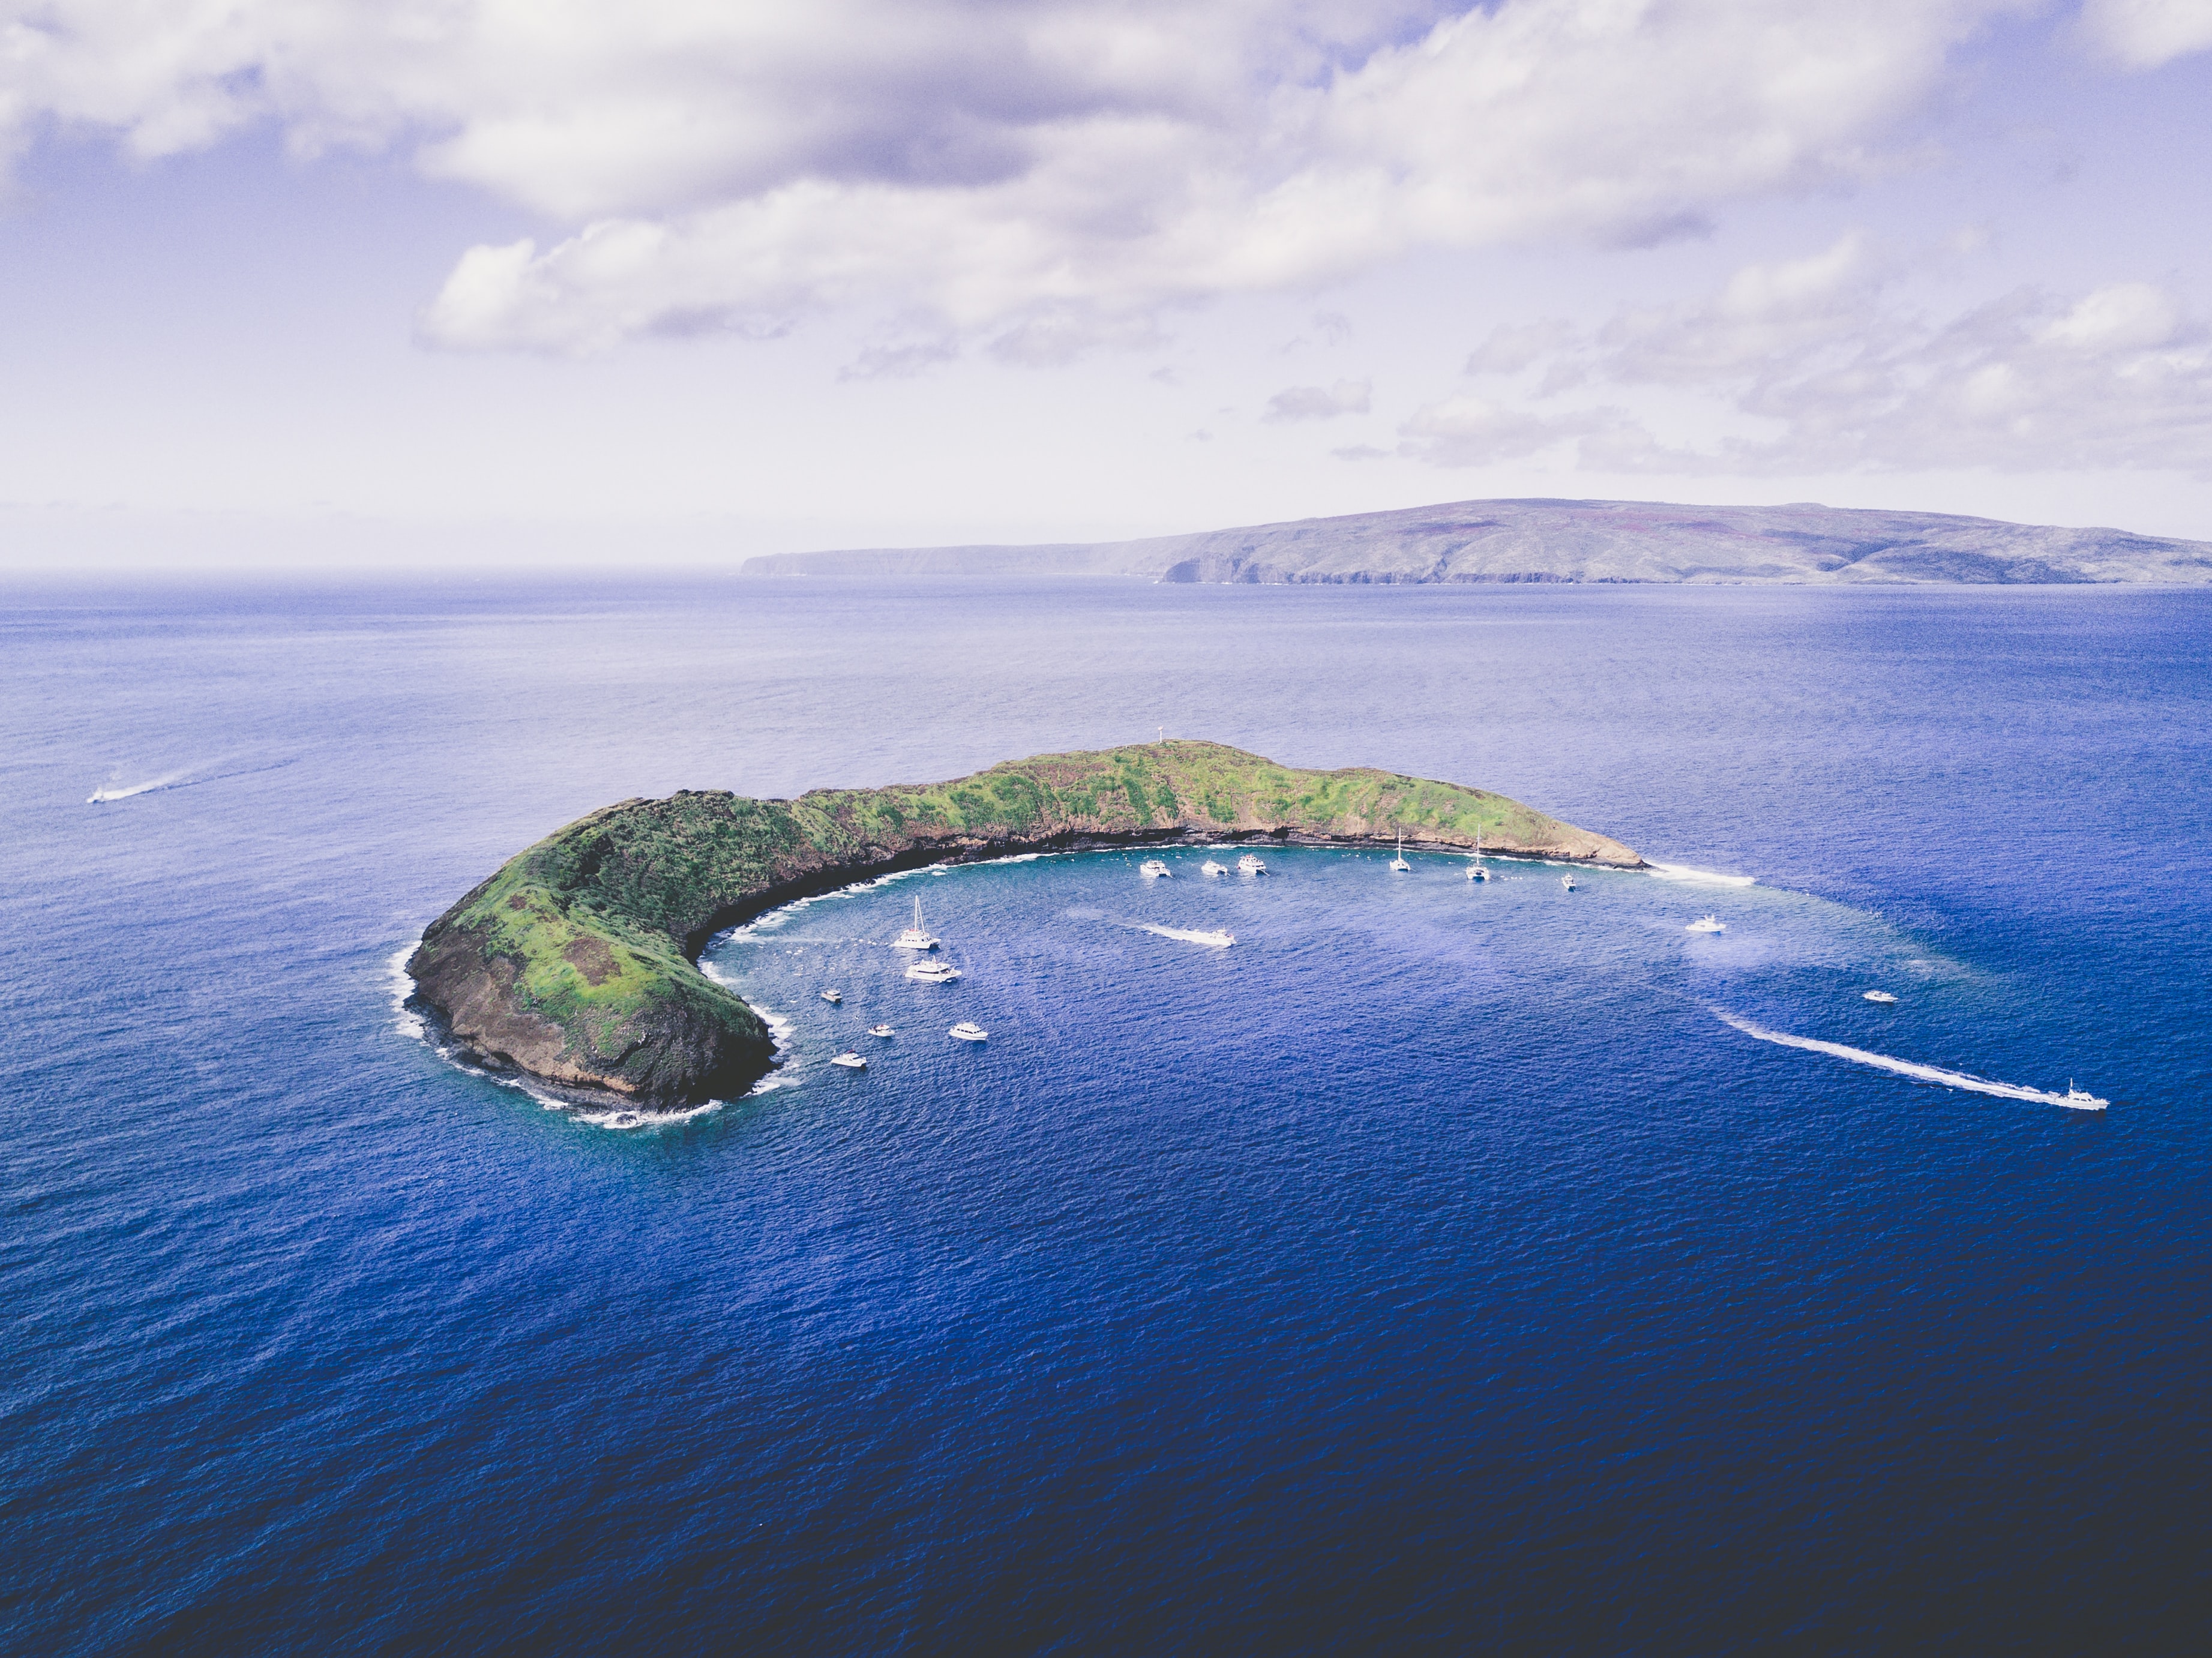 Остров новой жизни. Остров Молокини, Гавайи. Кратер Молокини, Гавайи. Архипелаг Ангтон. Ламаншский архипелаг.